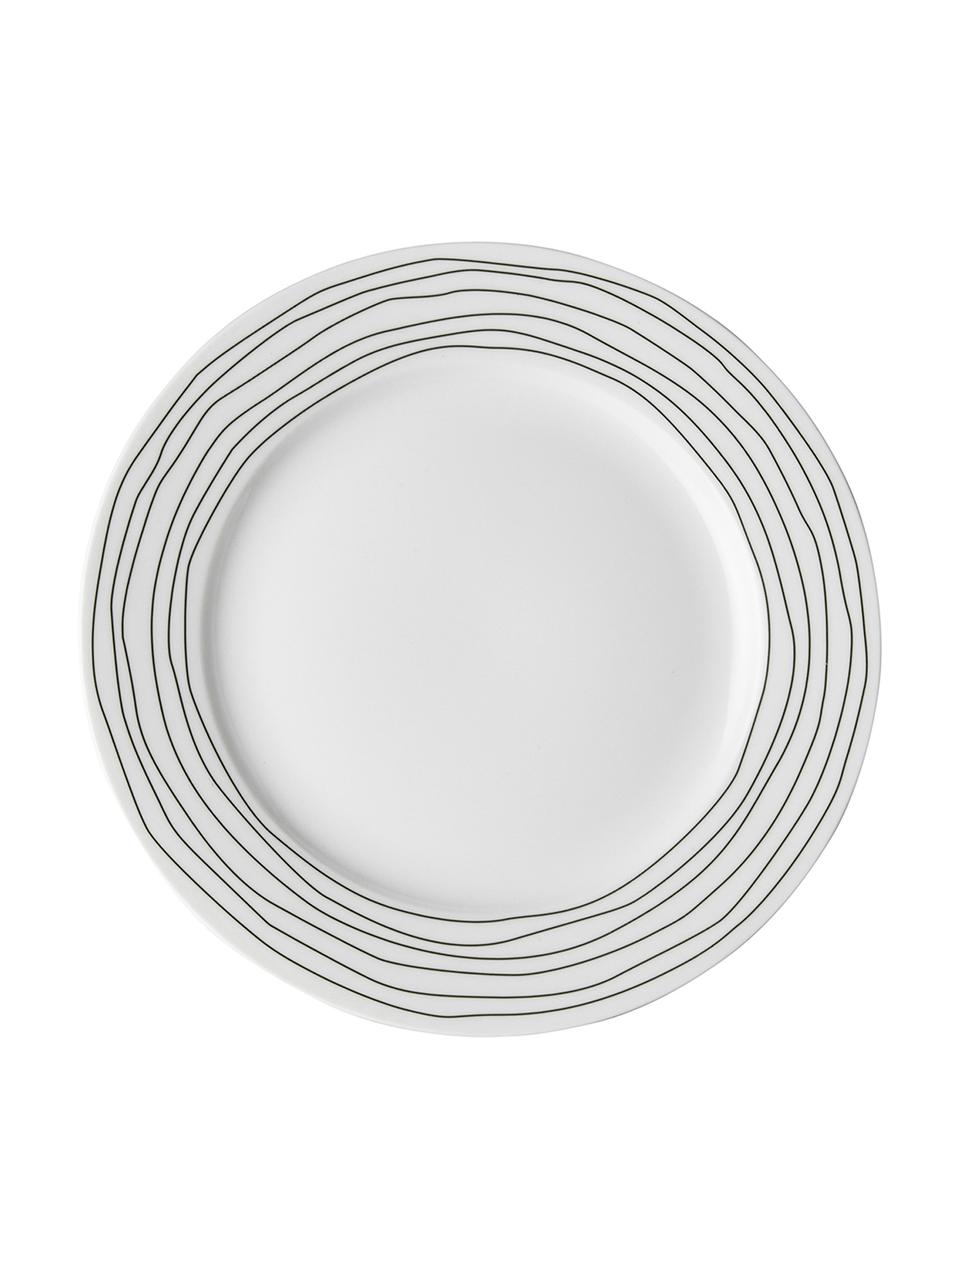 Snídaňový talíř s pruhovaným vzorem Eris Loft, 4 ks, Porcelán, Bílá, černá, Ø 21 cm, V 2 cm